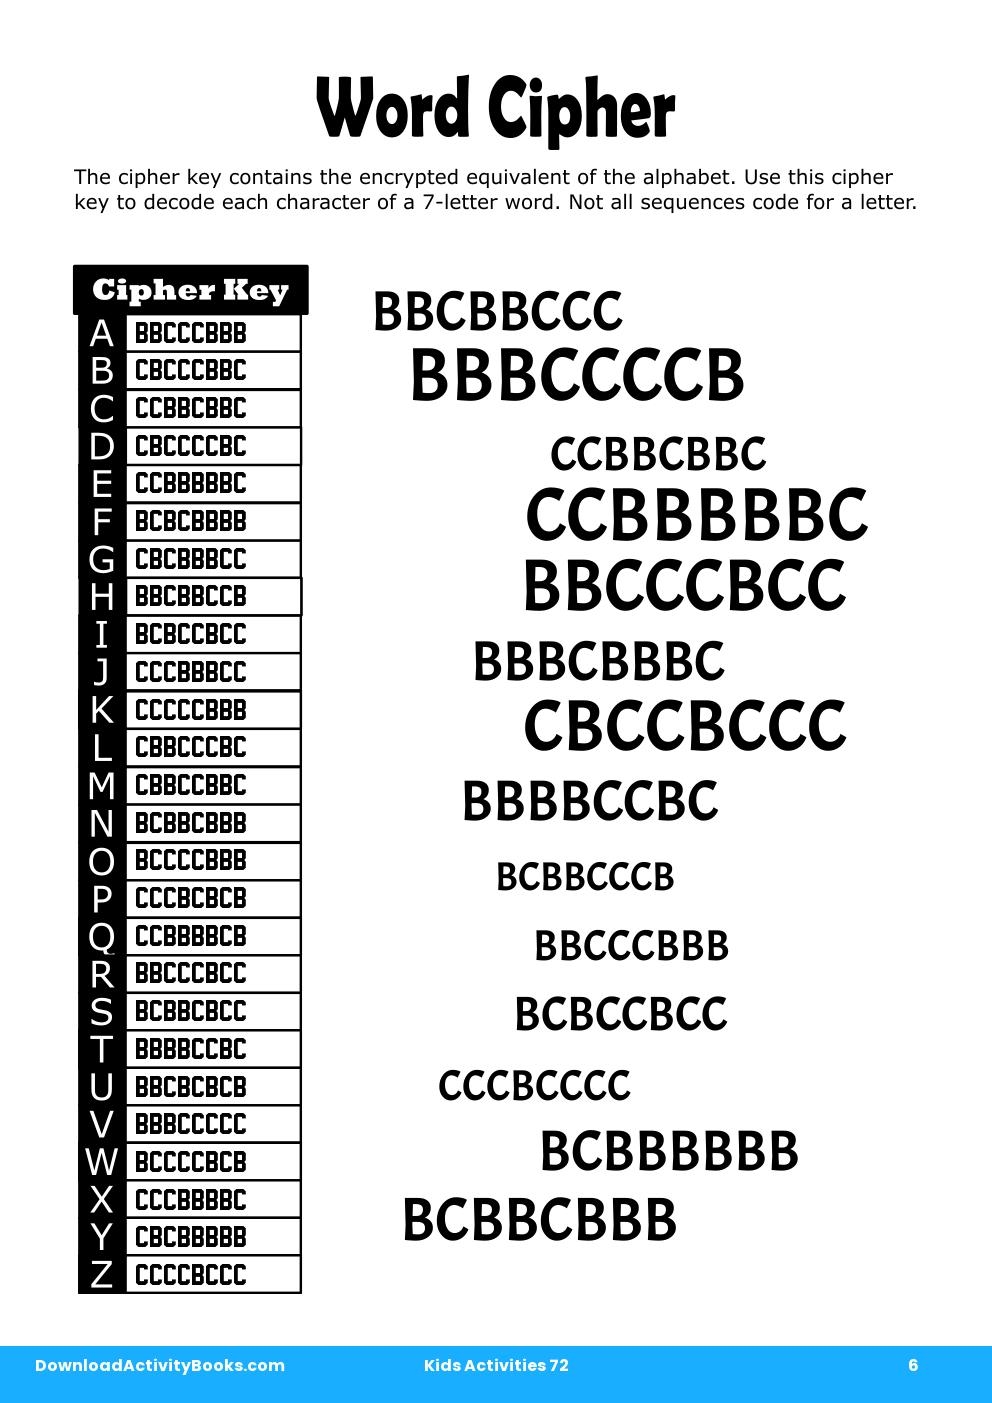 Word Cipher in Kids Activities 72